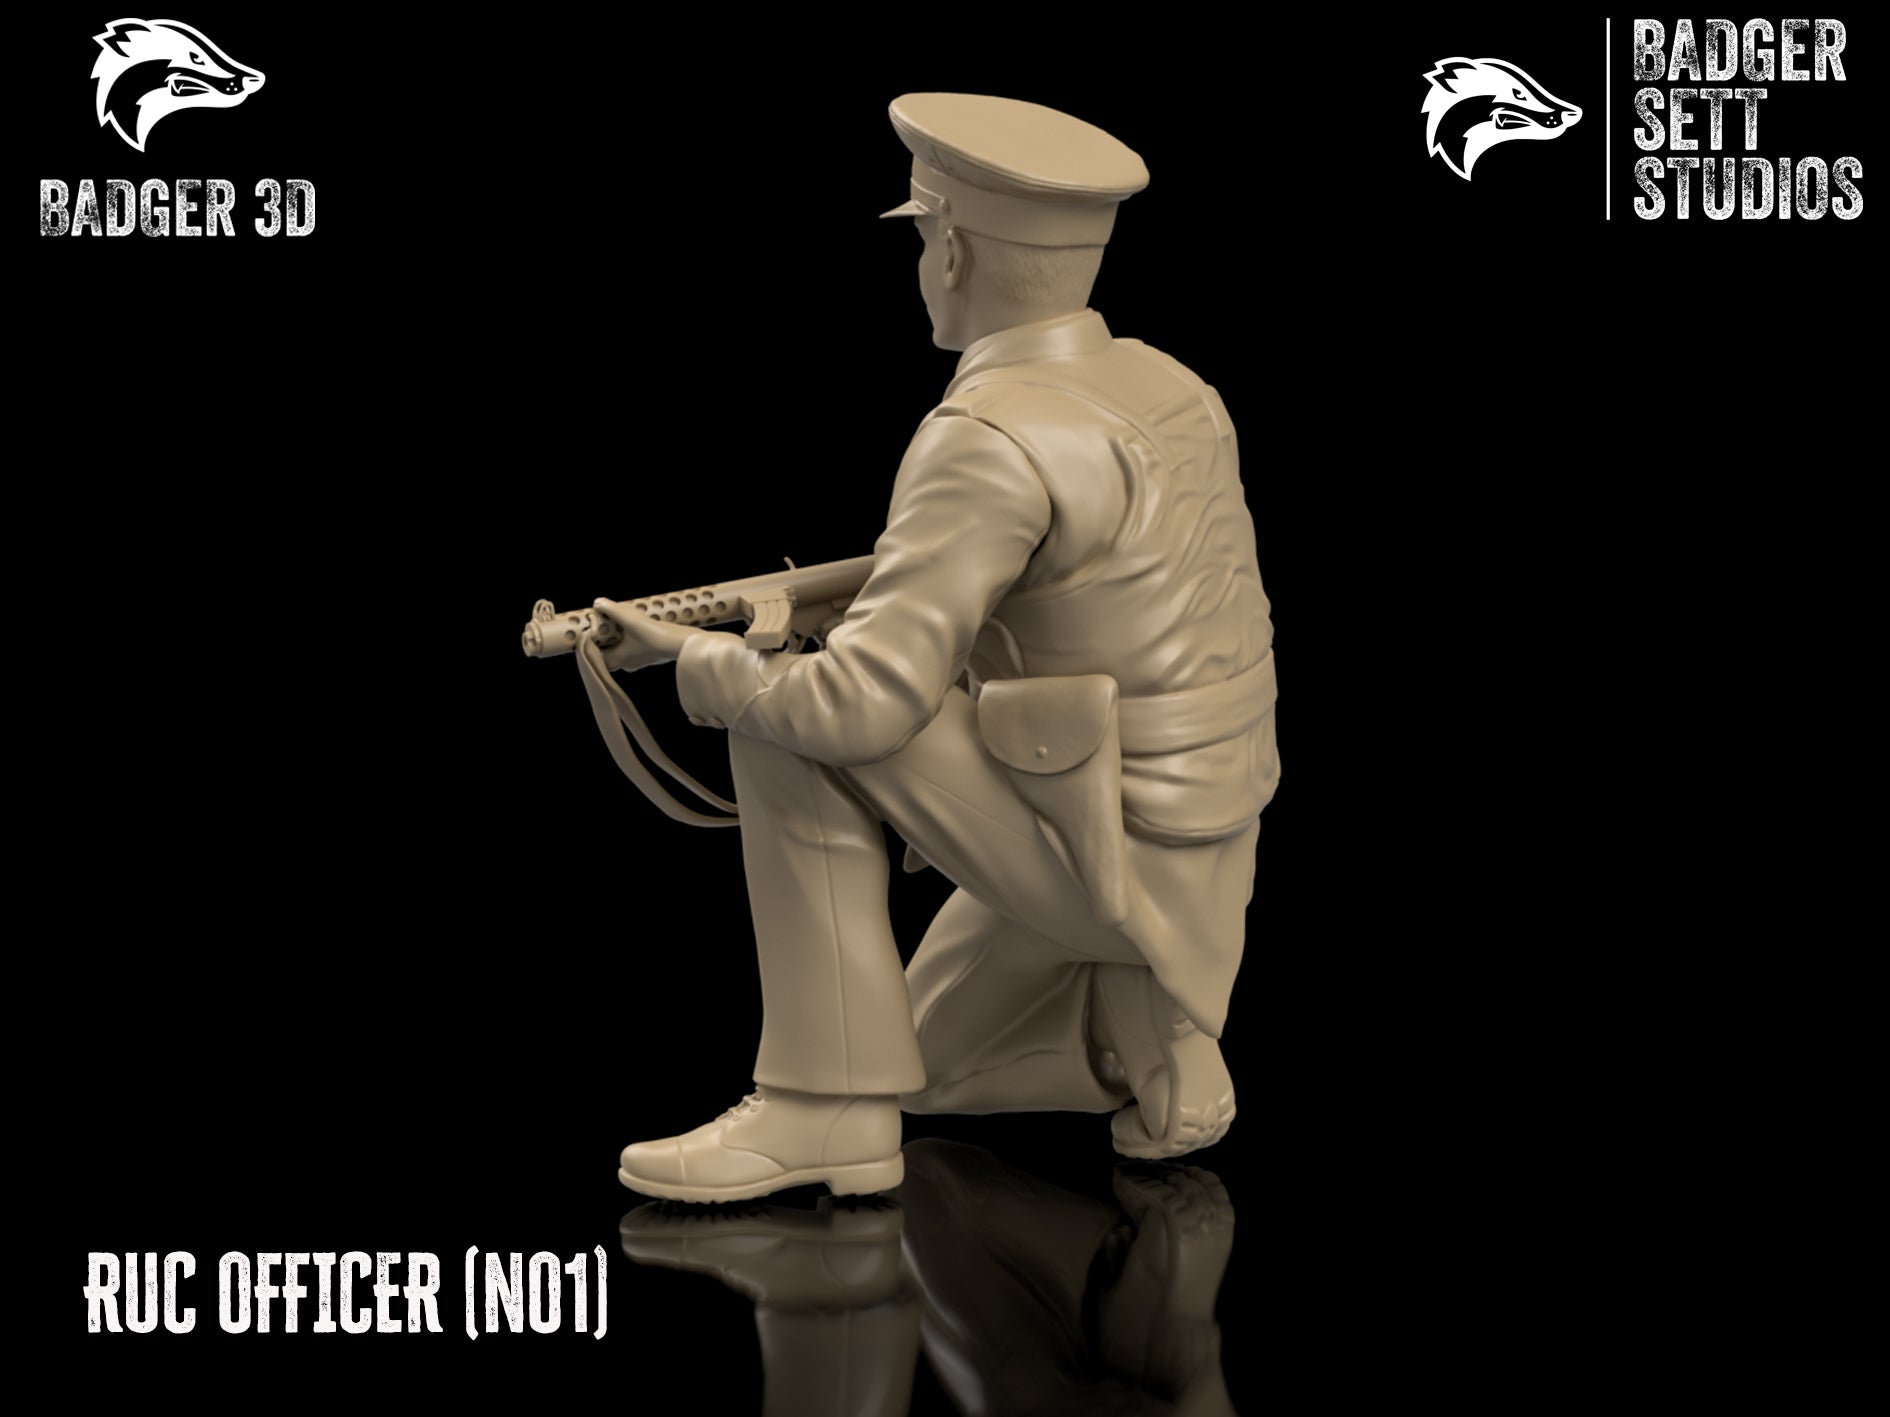 RUC Officer (No1) - NI